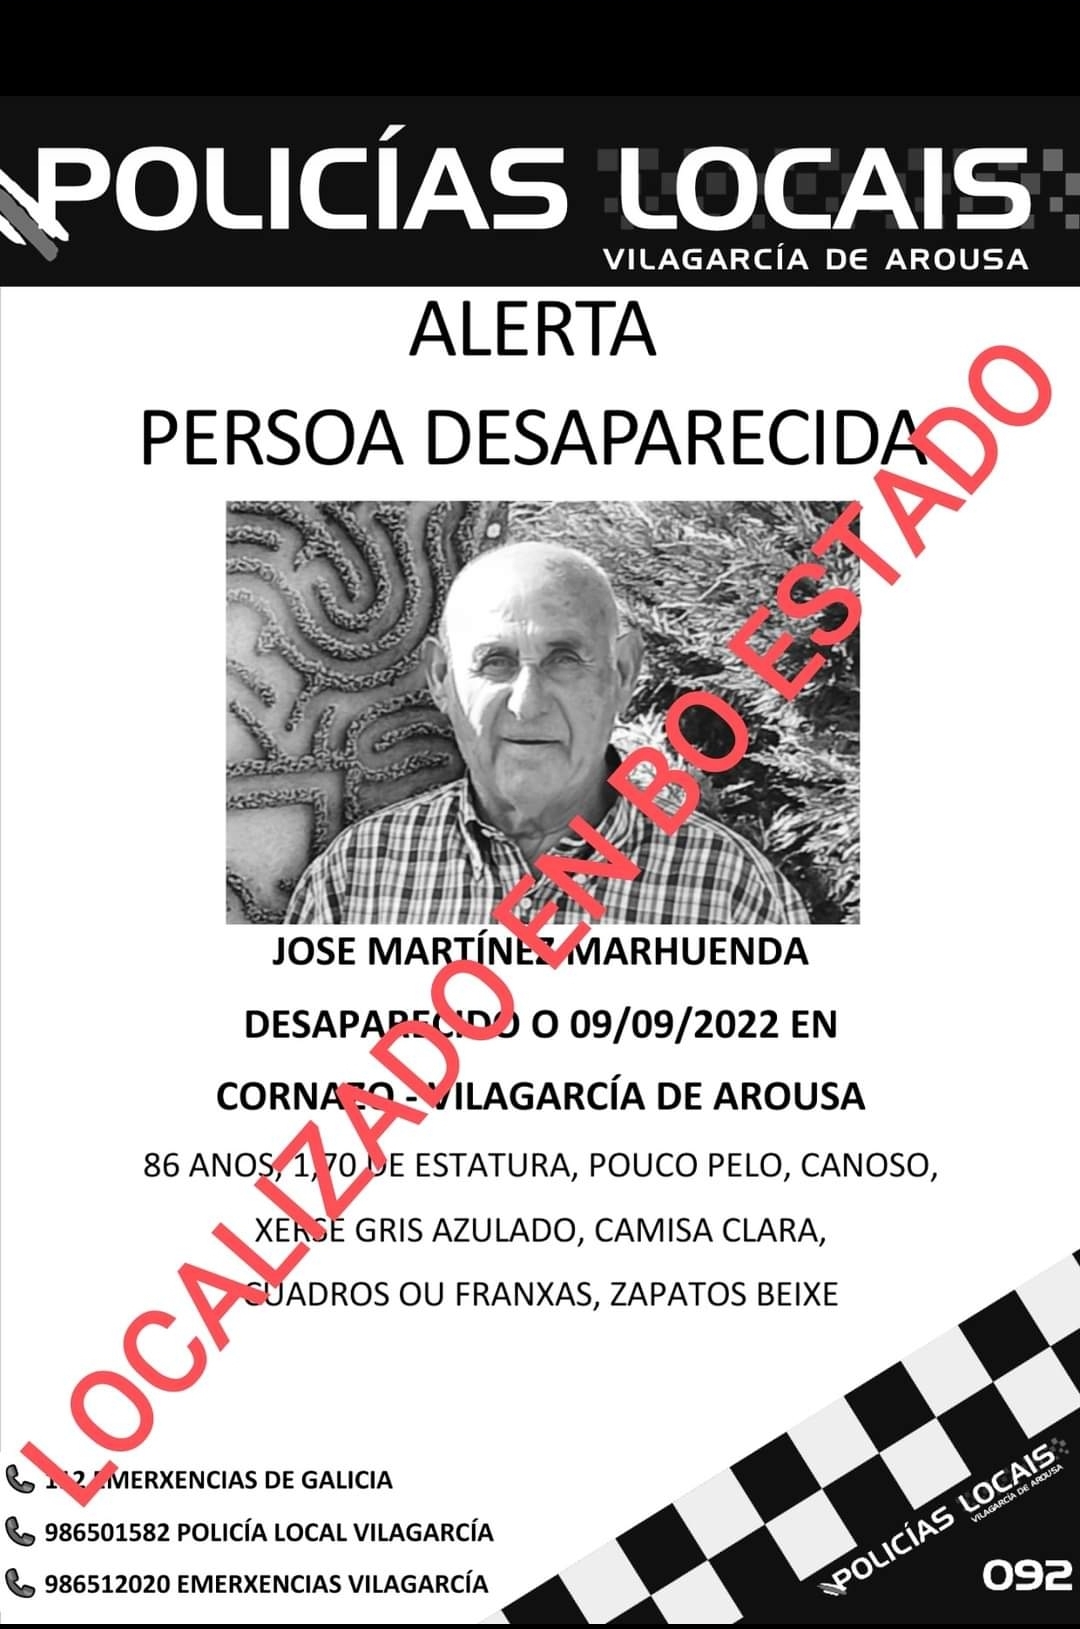 Localizado en buen estado el anciano desaparecido en Vilagarcía